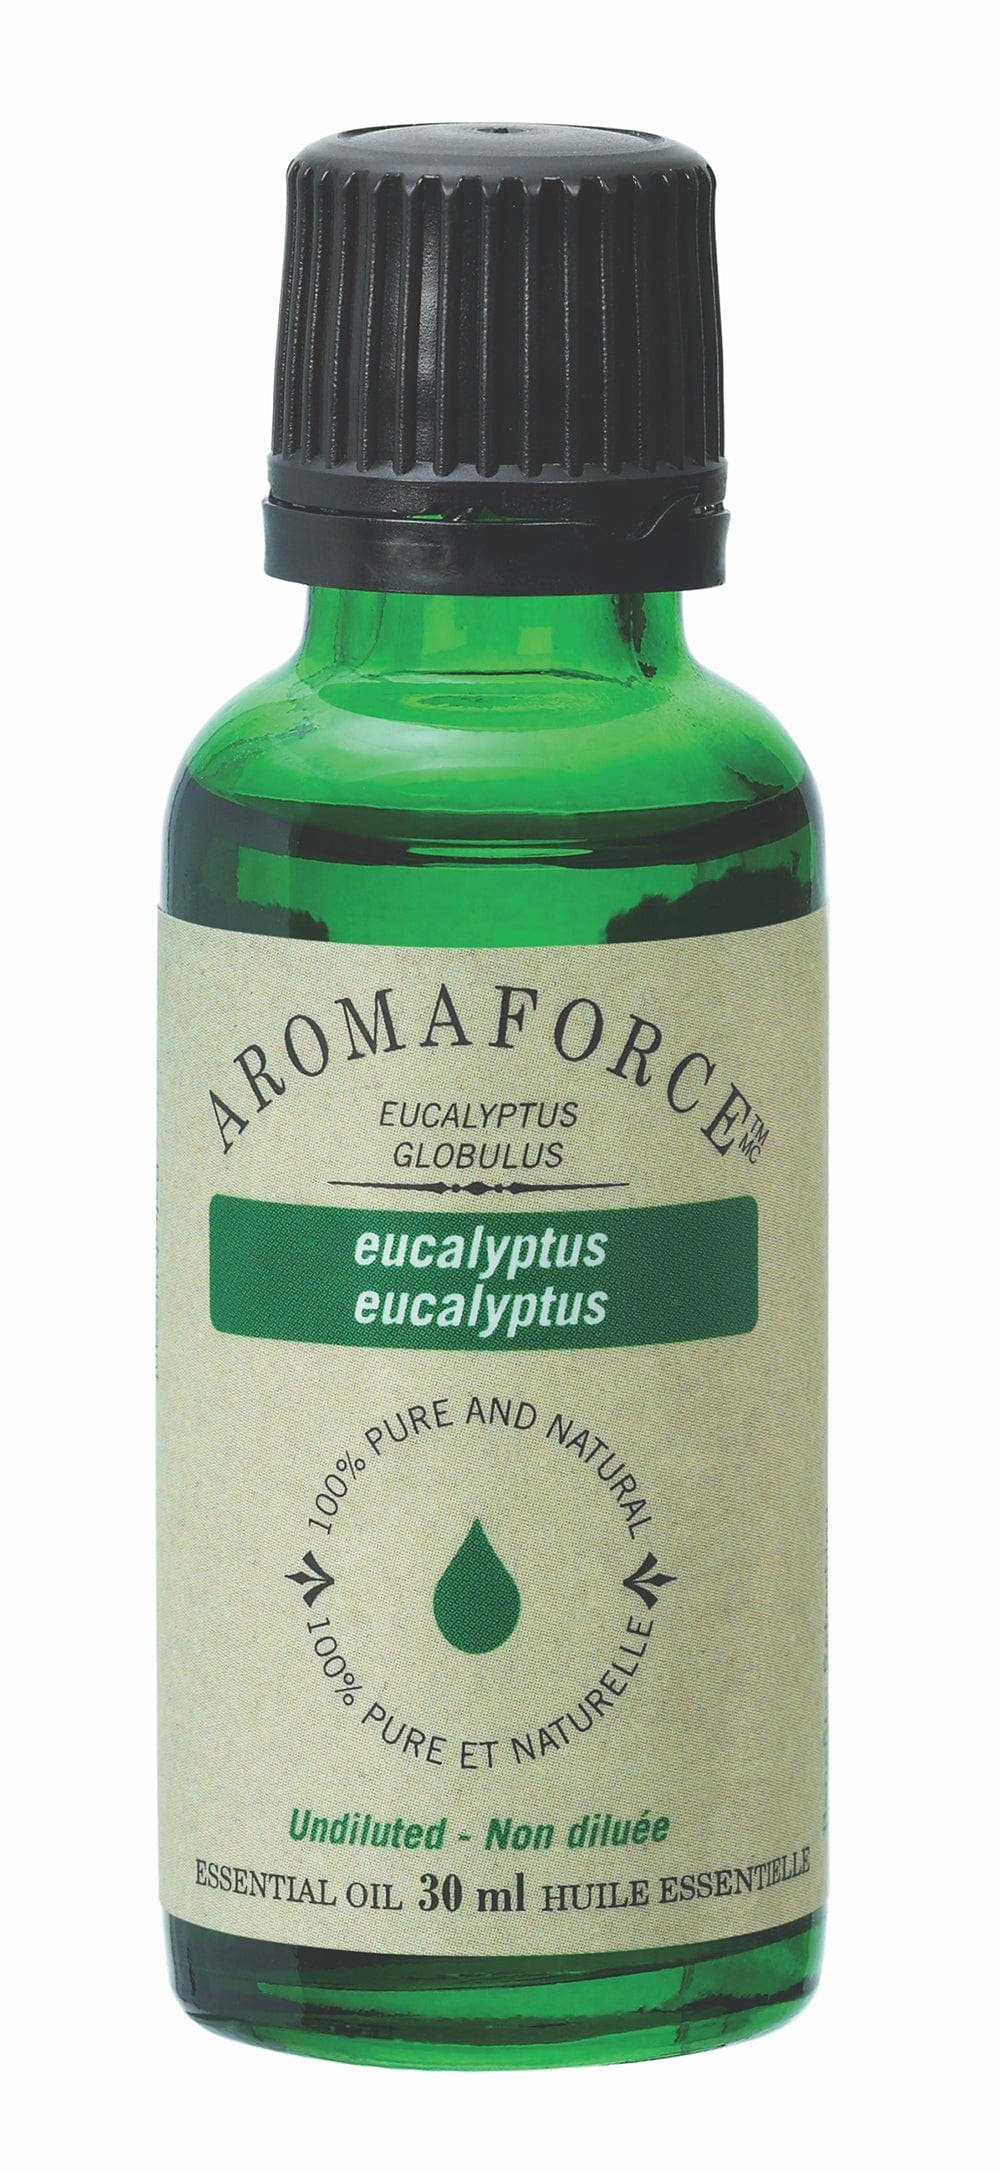 BIOFORCE (A. VOGEL) Soins & beauté Huile essentielle eucalyptus 30ml